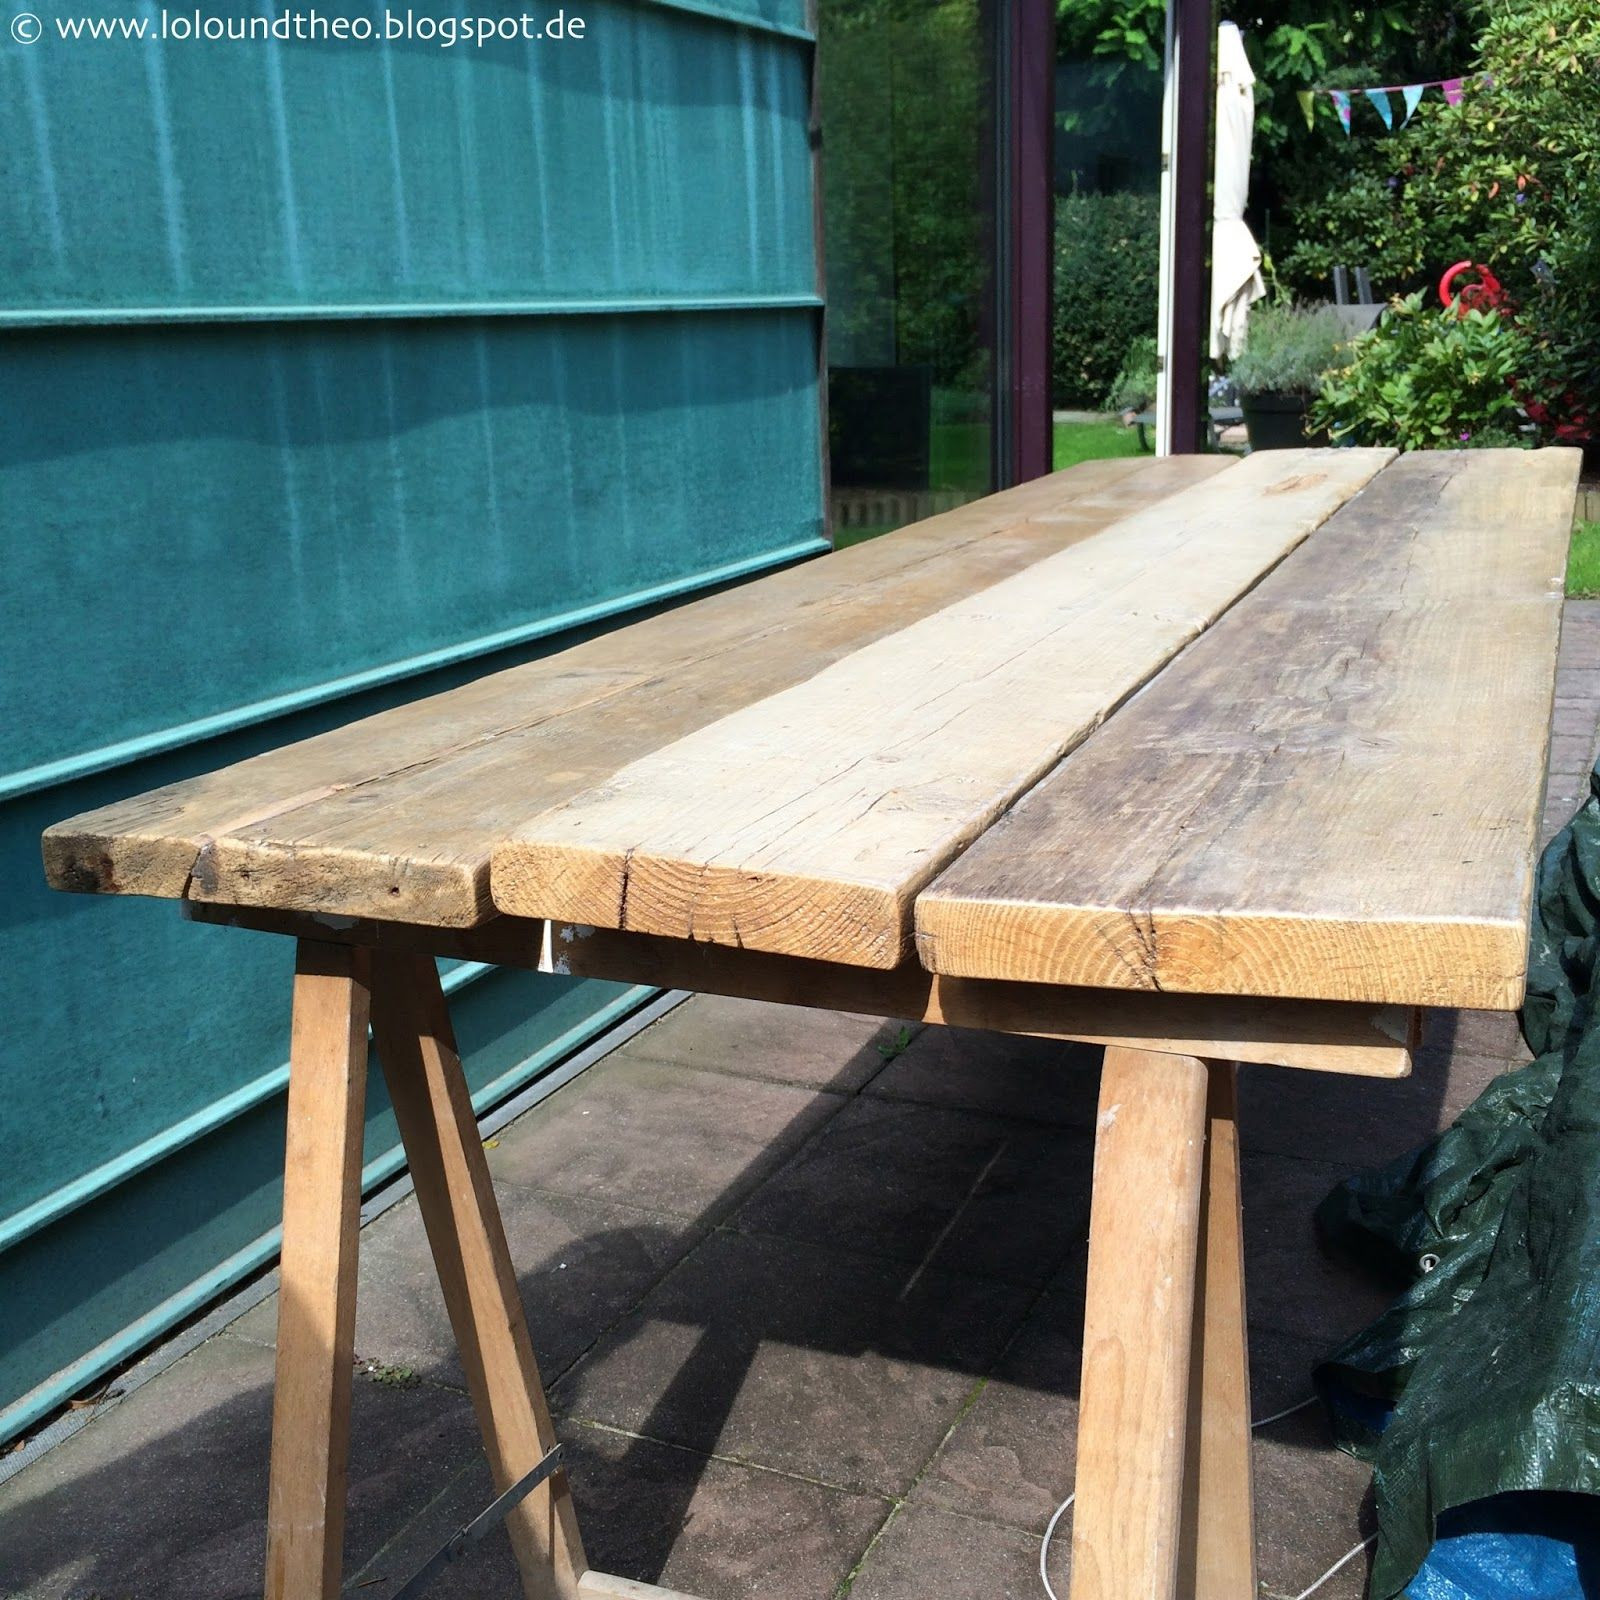 Gartentisch Diy
 DIY Gartentisch aus alten Brettern Tisch aus